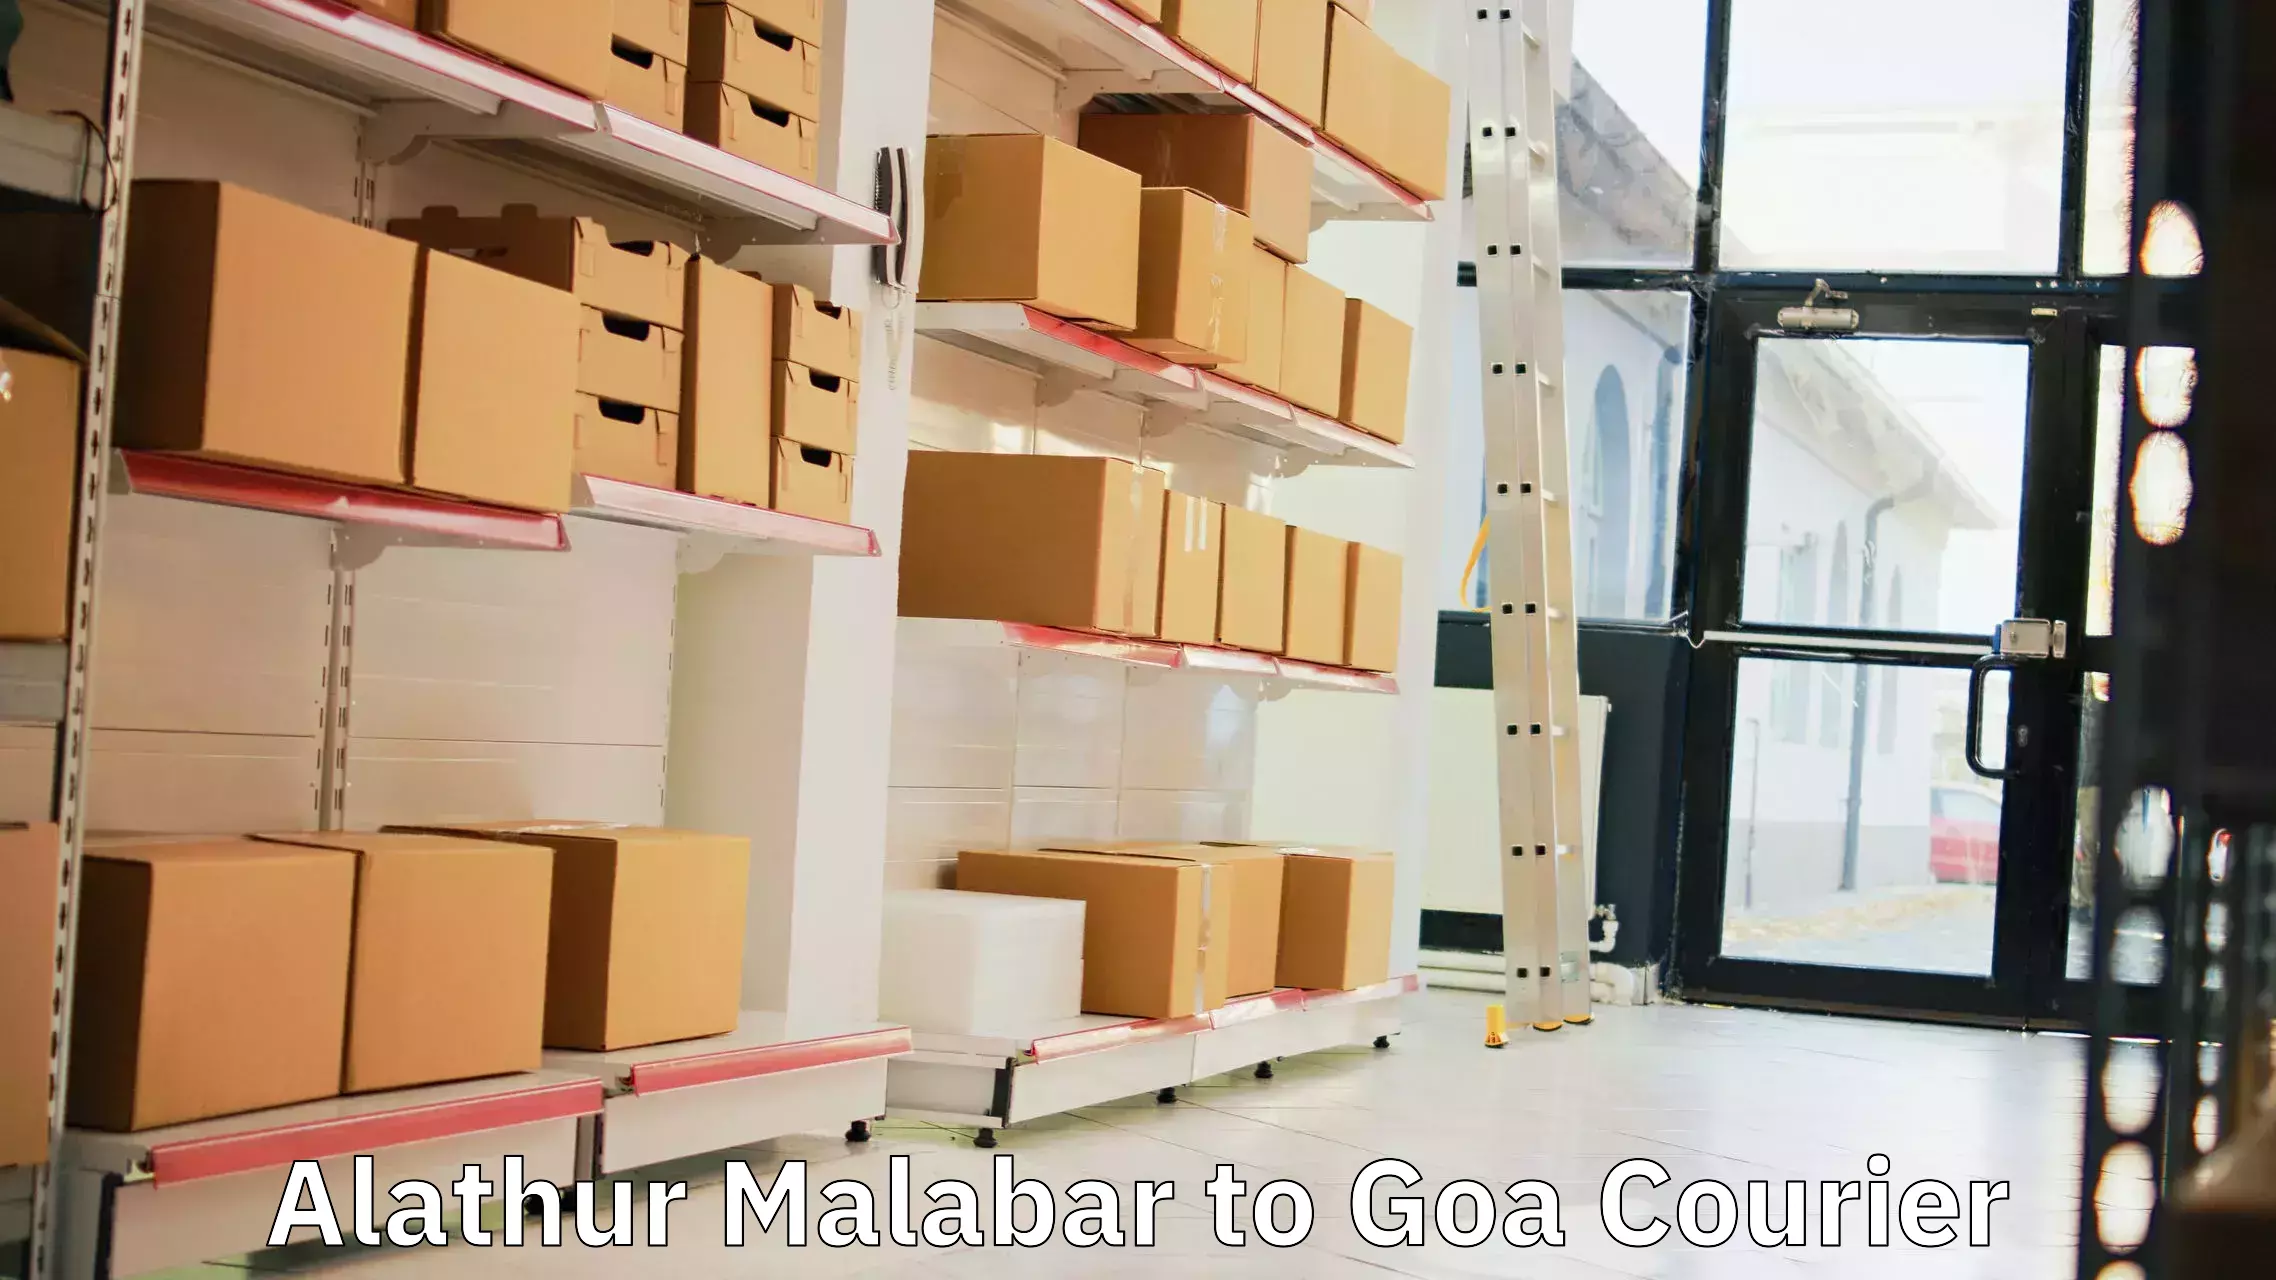 Urgent courier needs Alathur Malabar to Panaji